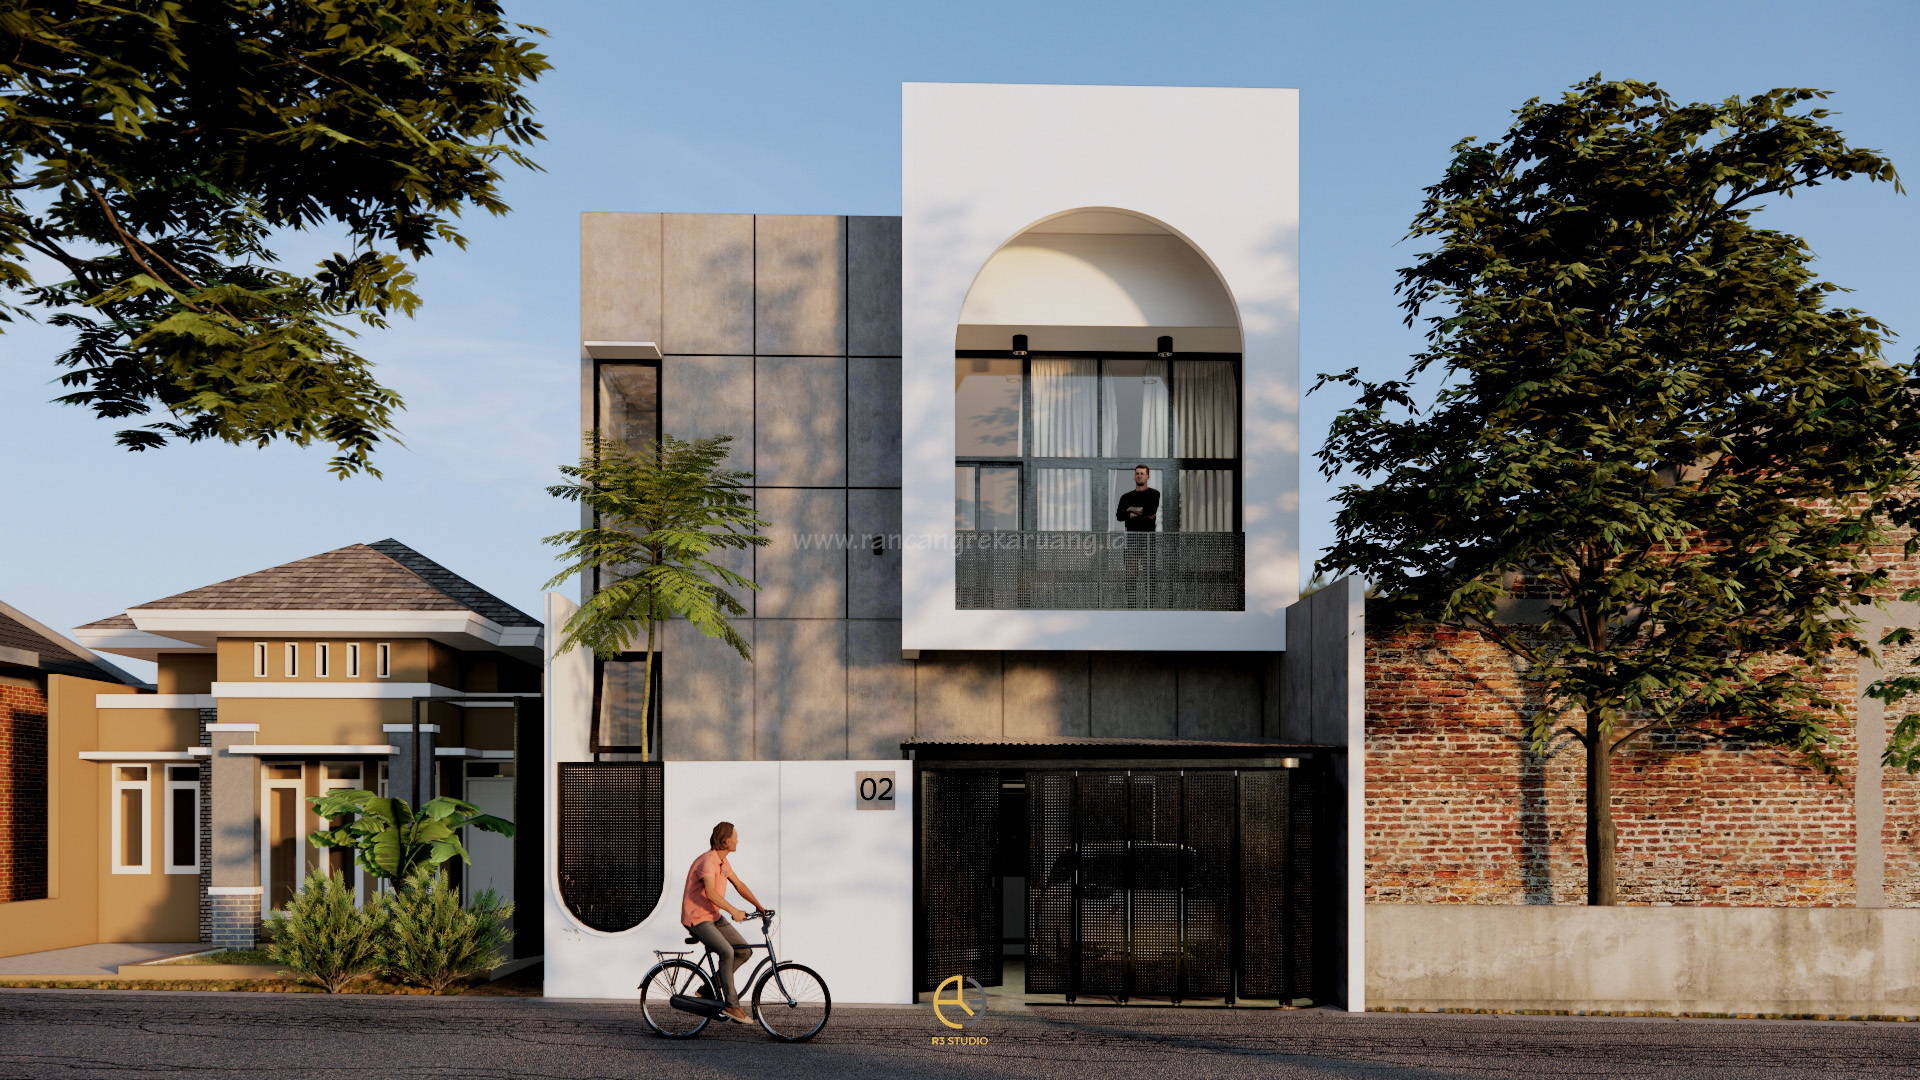 Mika House, Rumah Minimalis gaya Industrial dengan Dua Fungsi di Sleman Yogyakarta